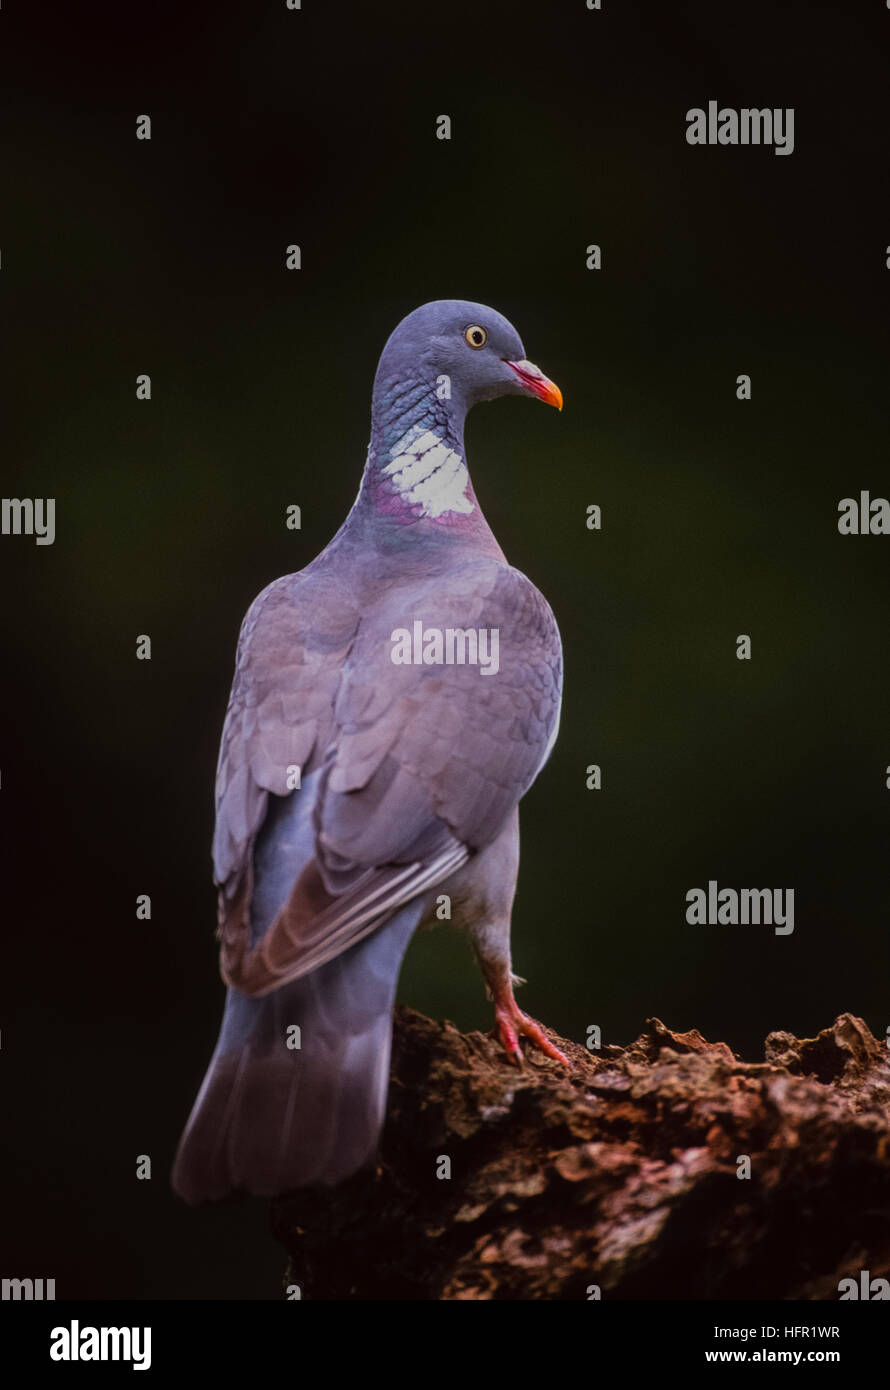 Pigeon ramier, Columba palumbus, perché sur une branche,Angleterre,United Kingdom Banque D'Images